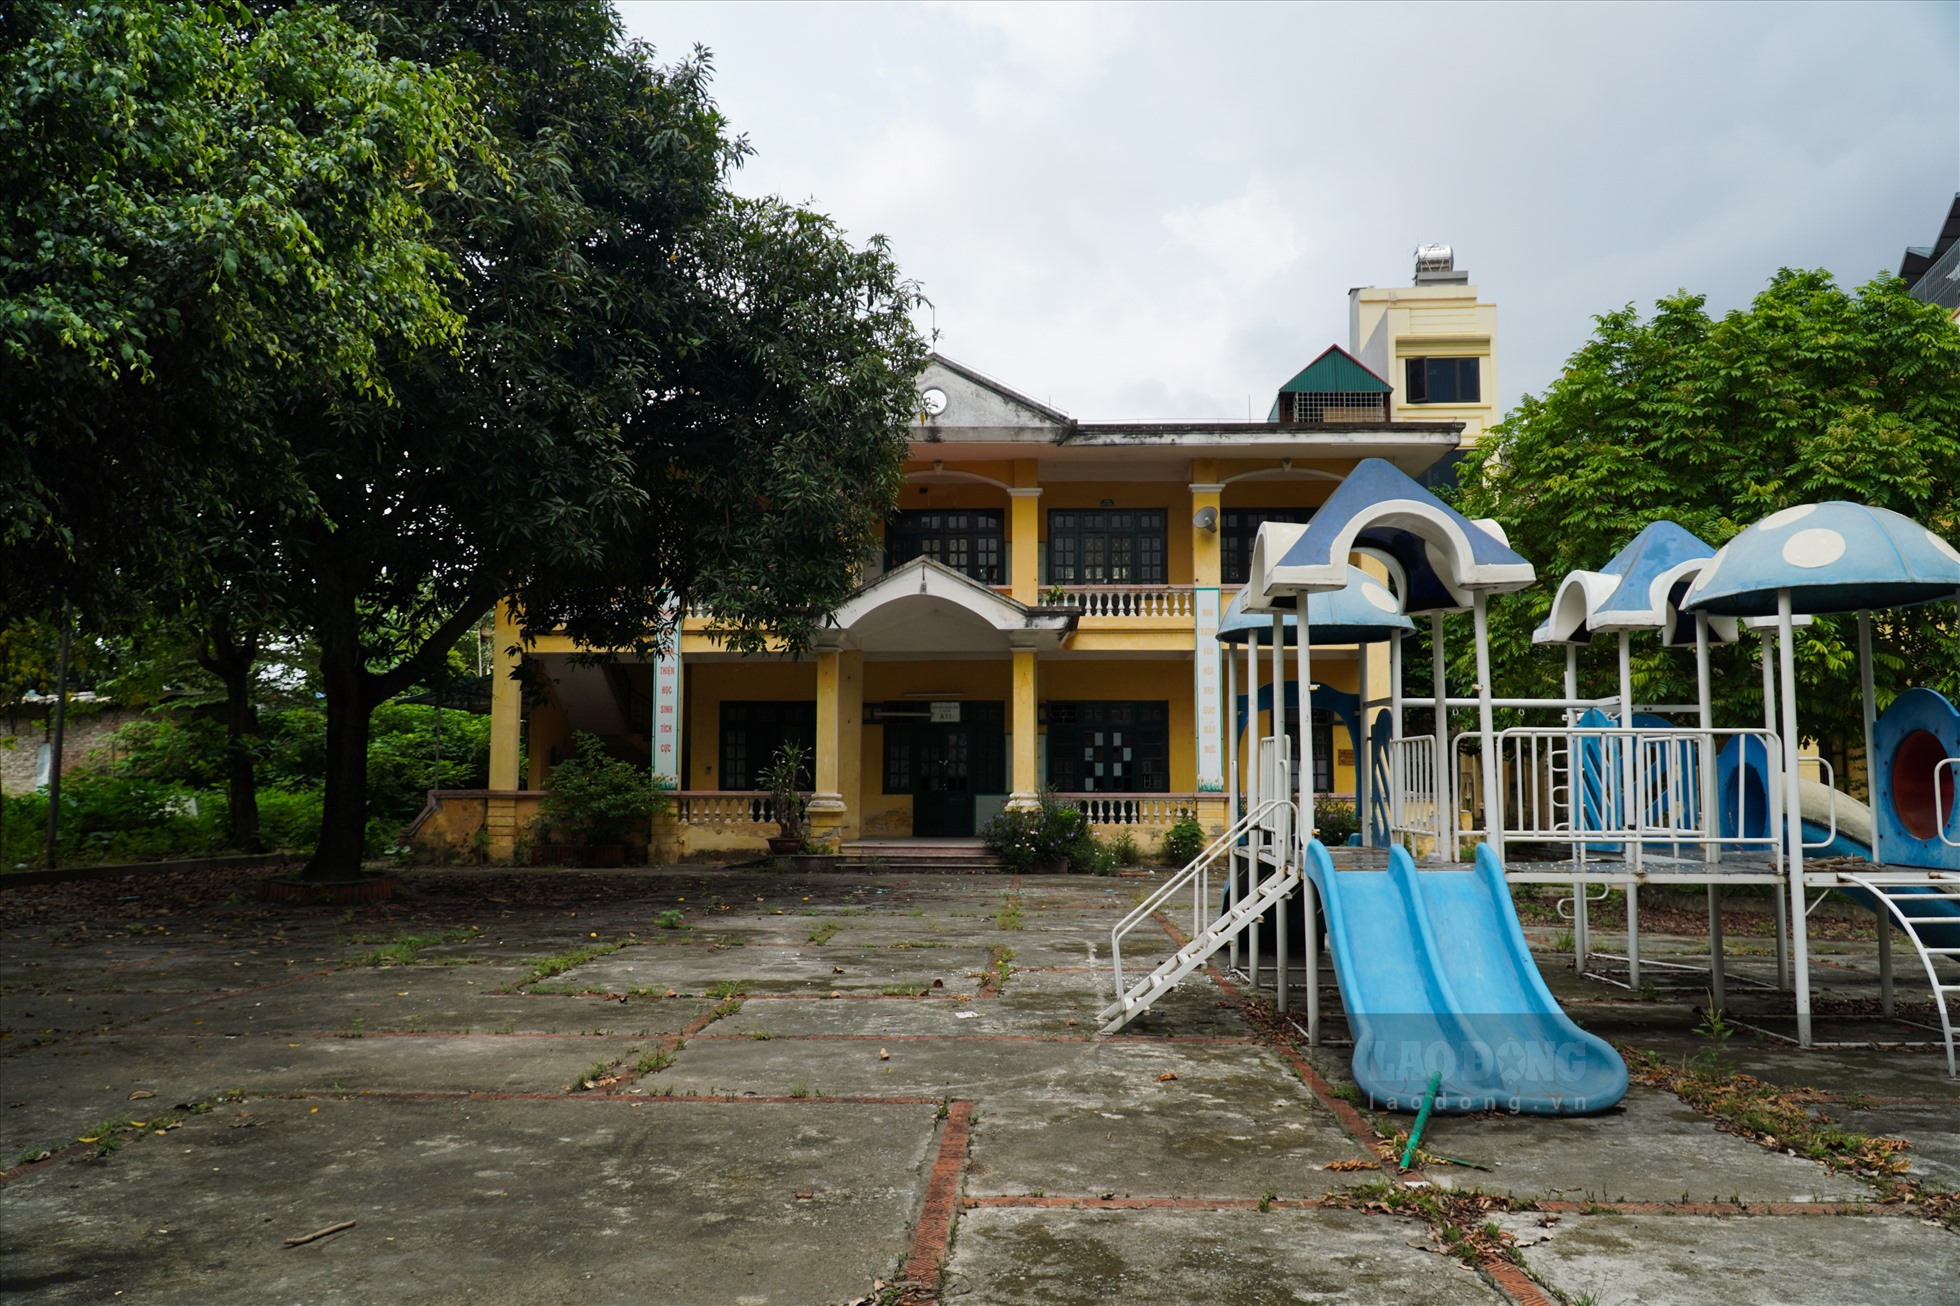 Trường mầm non Hoàng Liệt cơ sở Tứ Kỳ (cũ) bị bỏ hoang gồm 2 toà nhà với khoảng 10 phòng học.